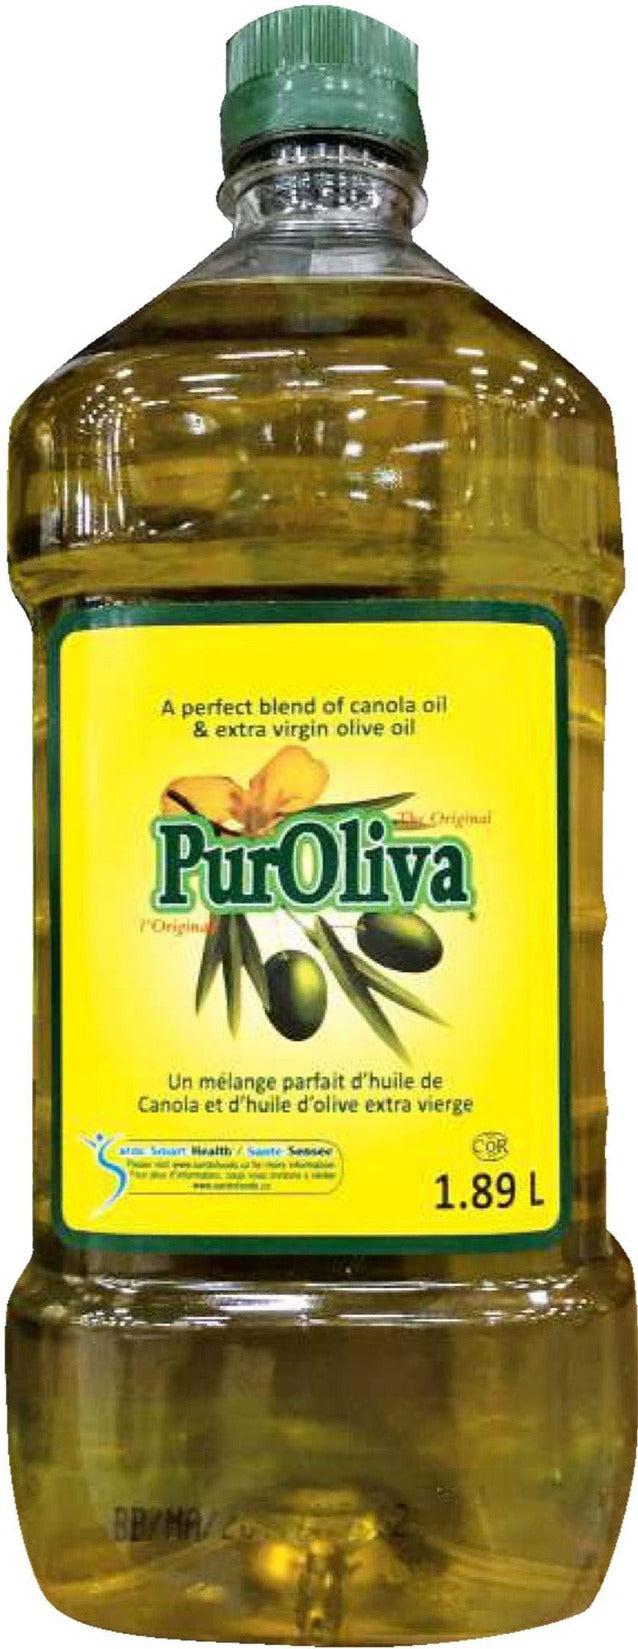 VSO - OLIVICA/Puroliva - Olive Oil